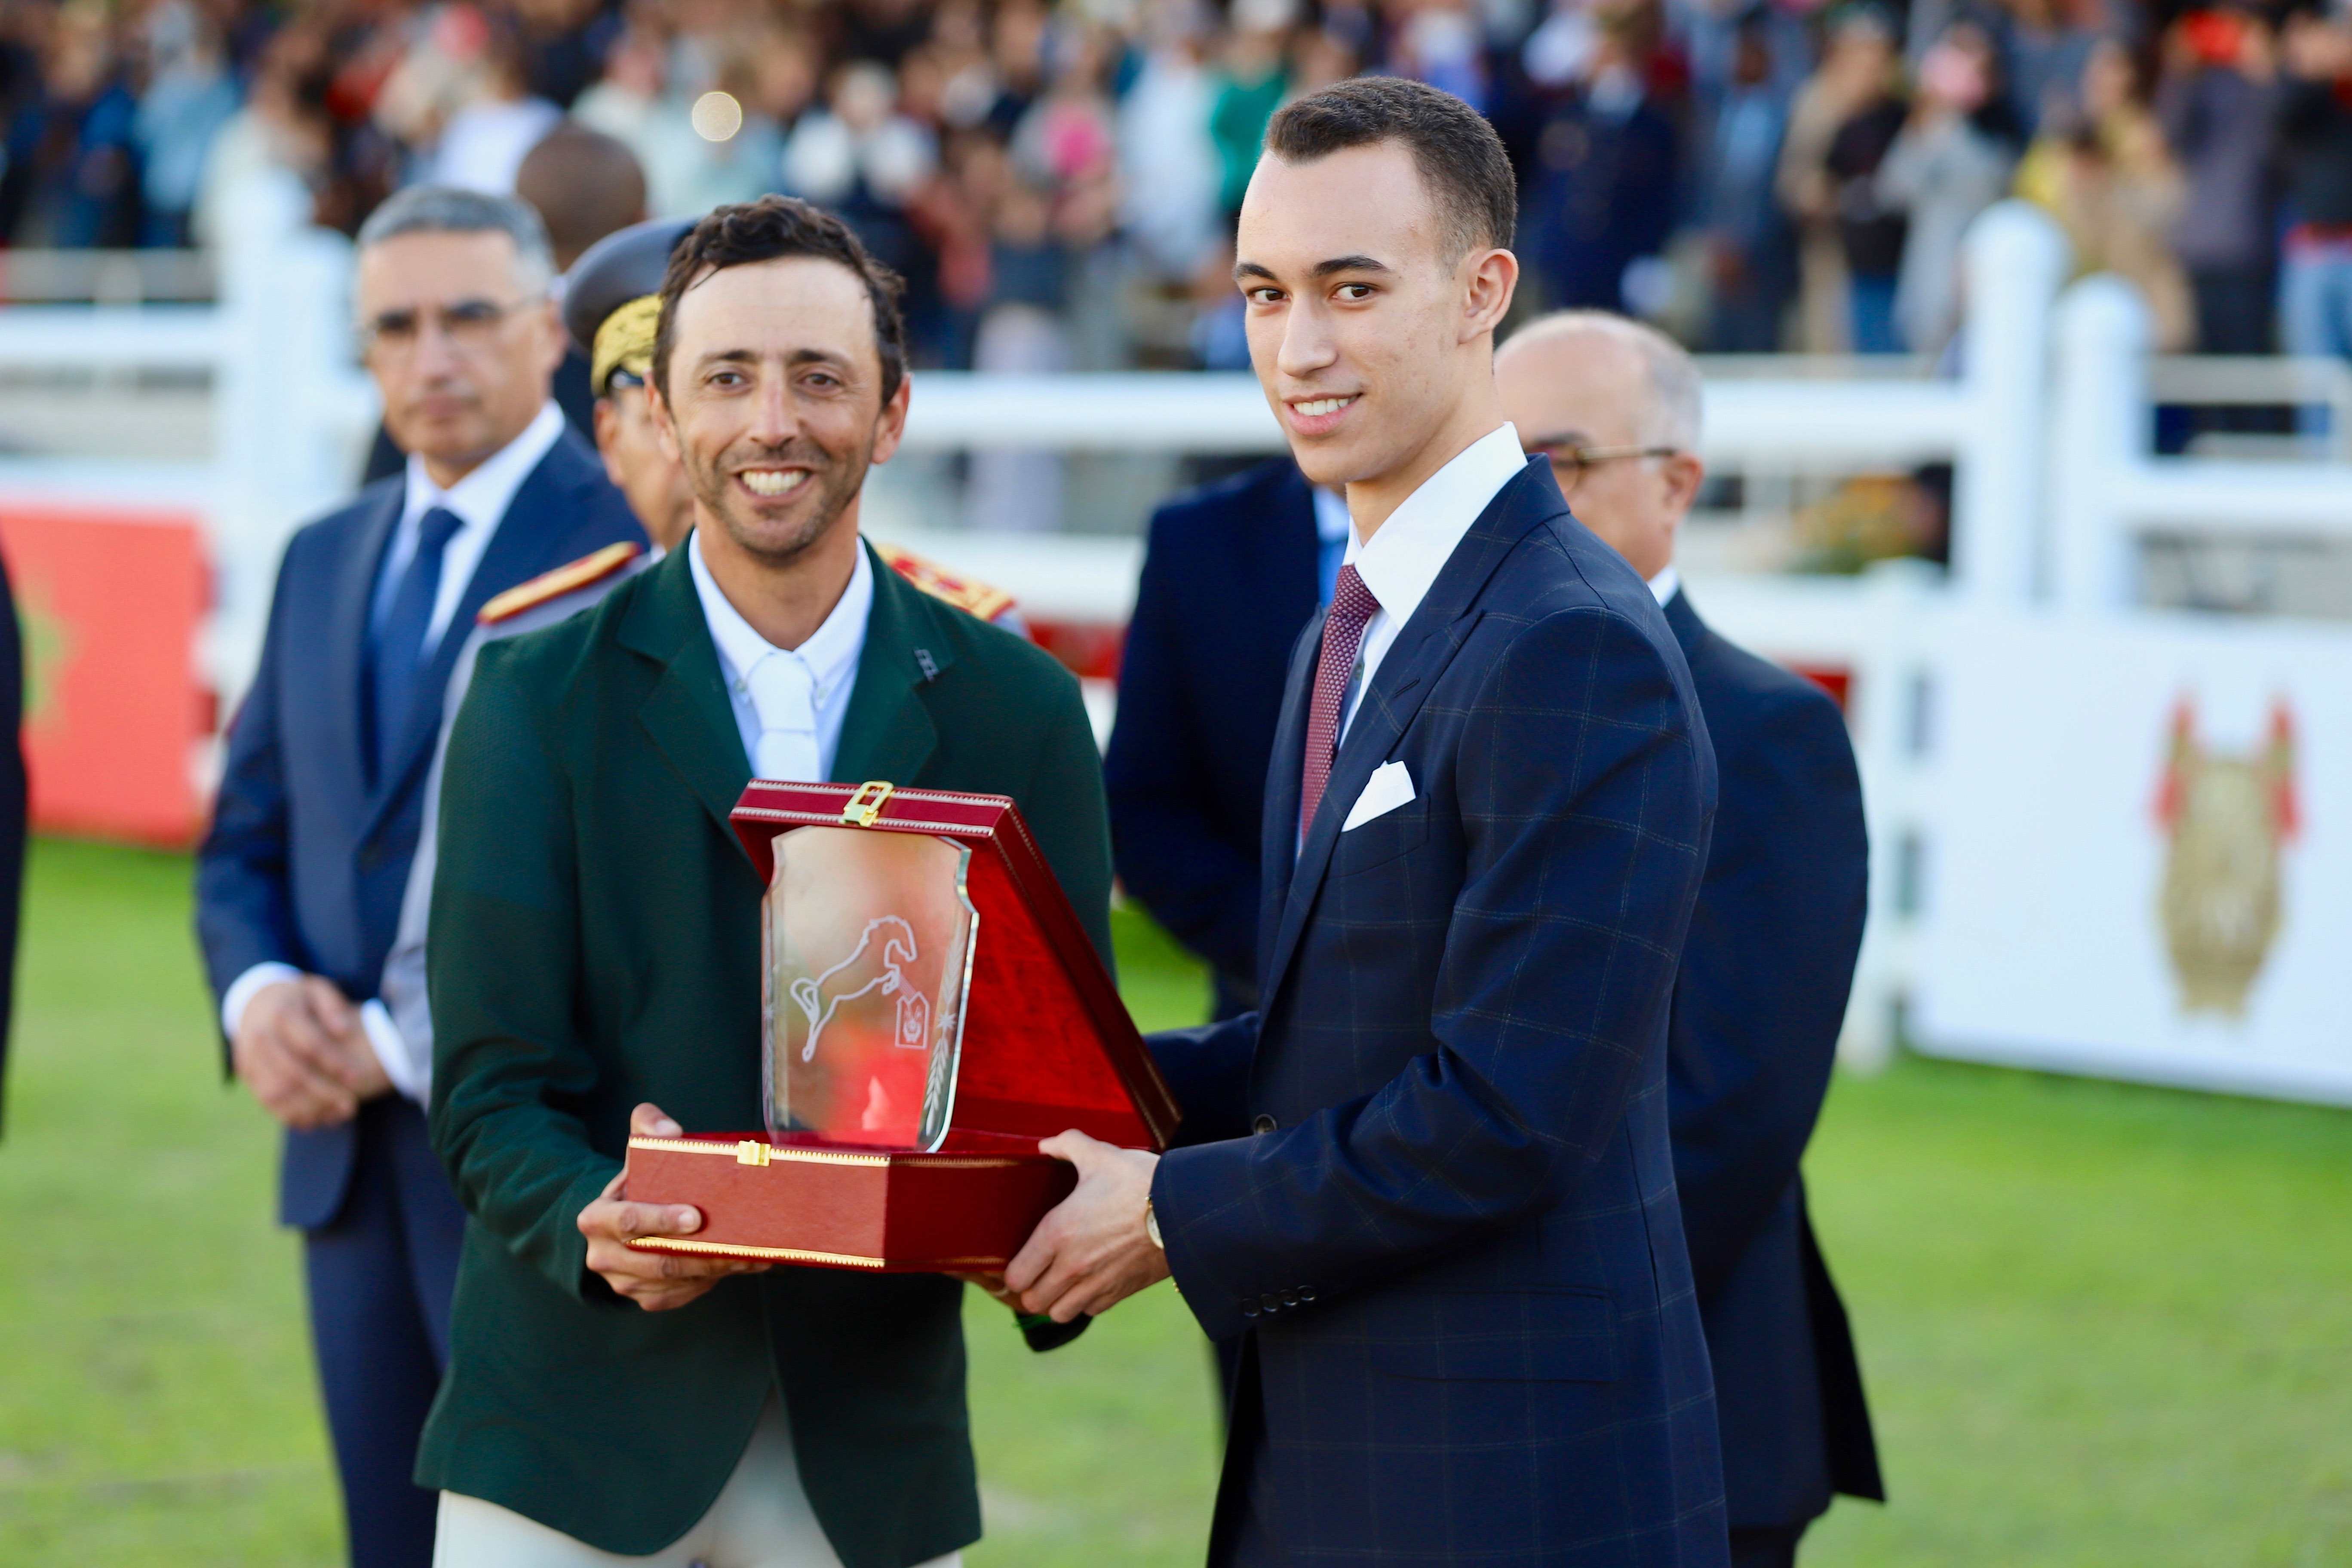 ولي عهد المغرب يسلم الجائزة الكبرى للملك محمد السادس للقفز على الحواجز، برسم المباراة الرسمية للقفز على الحواجز 